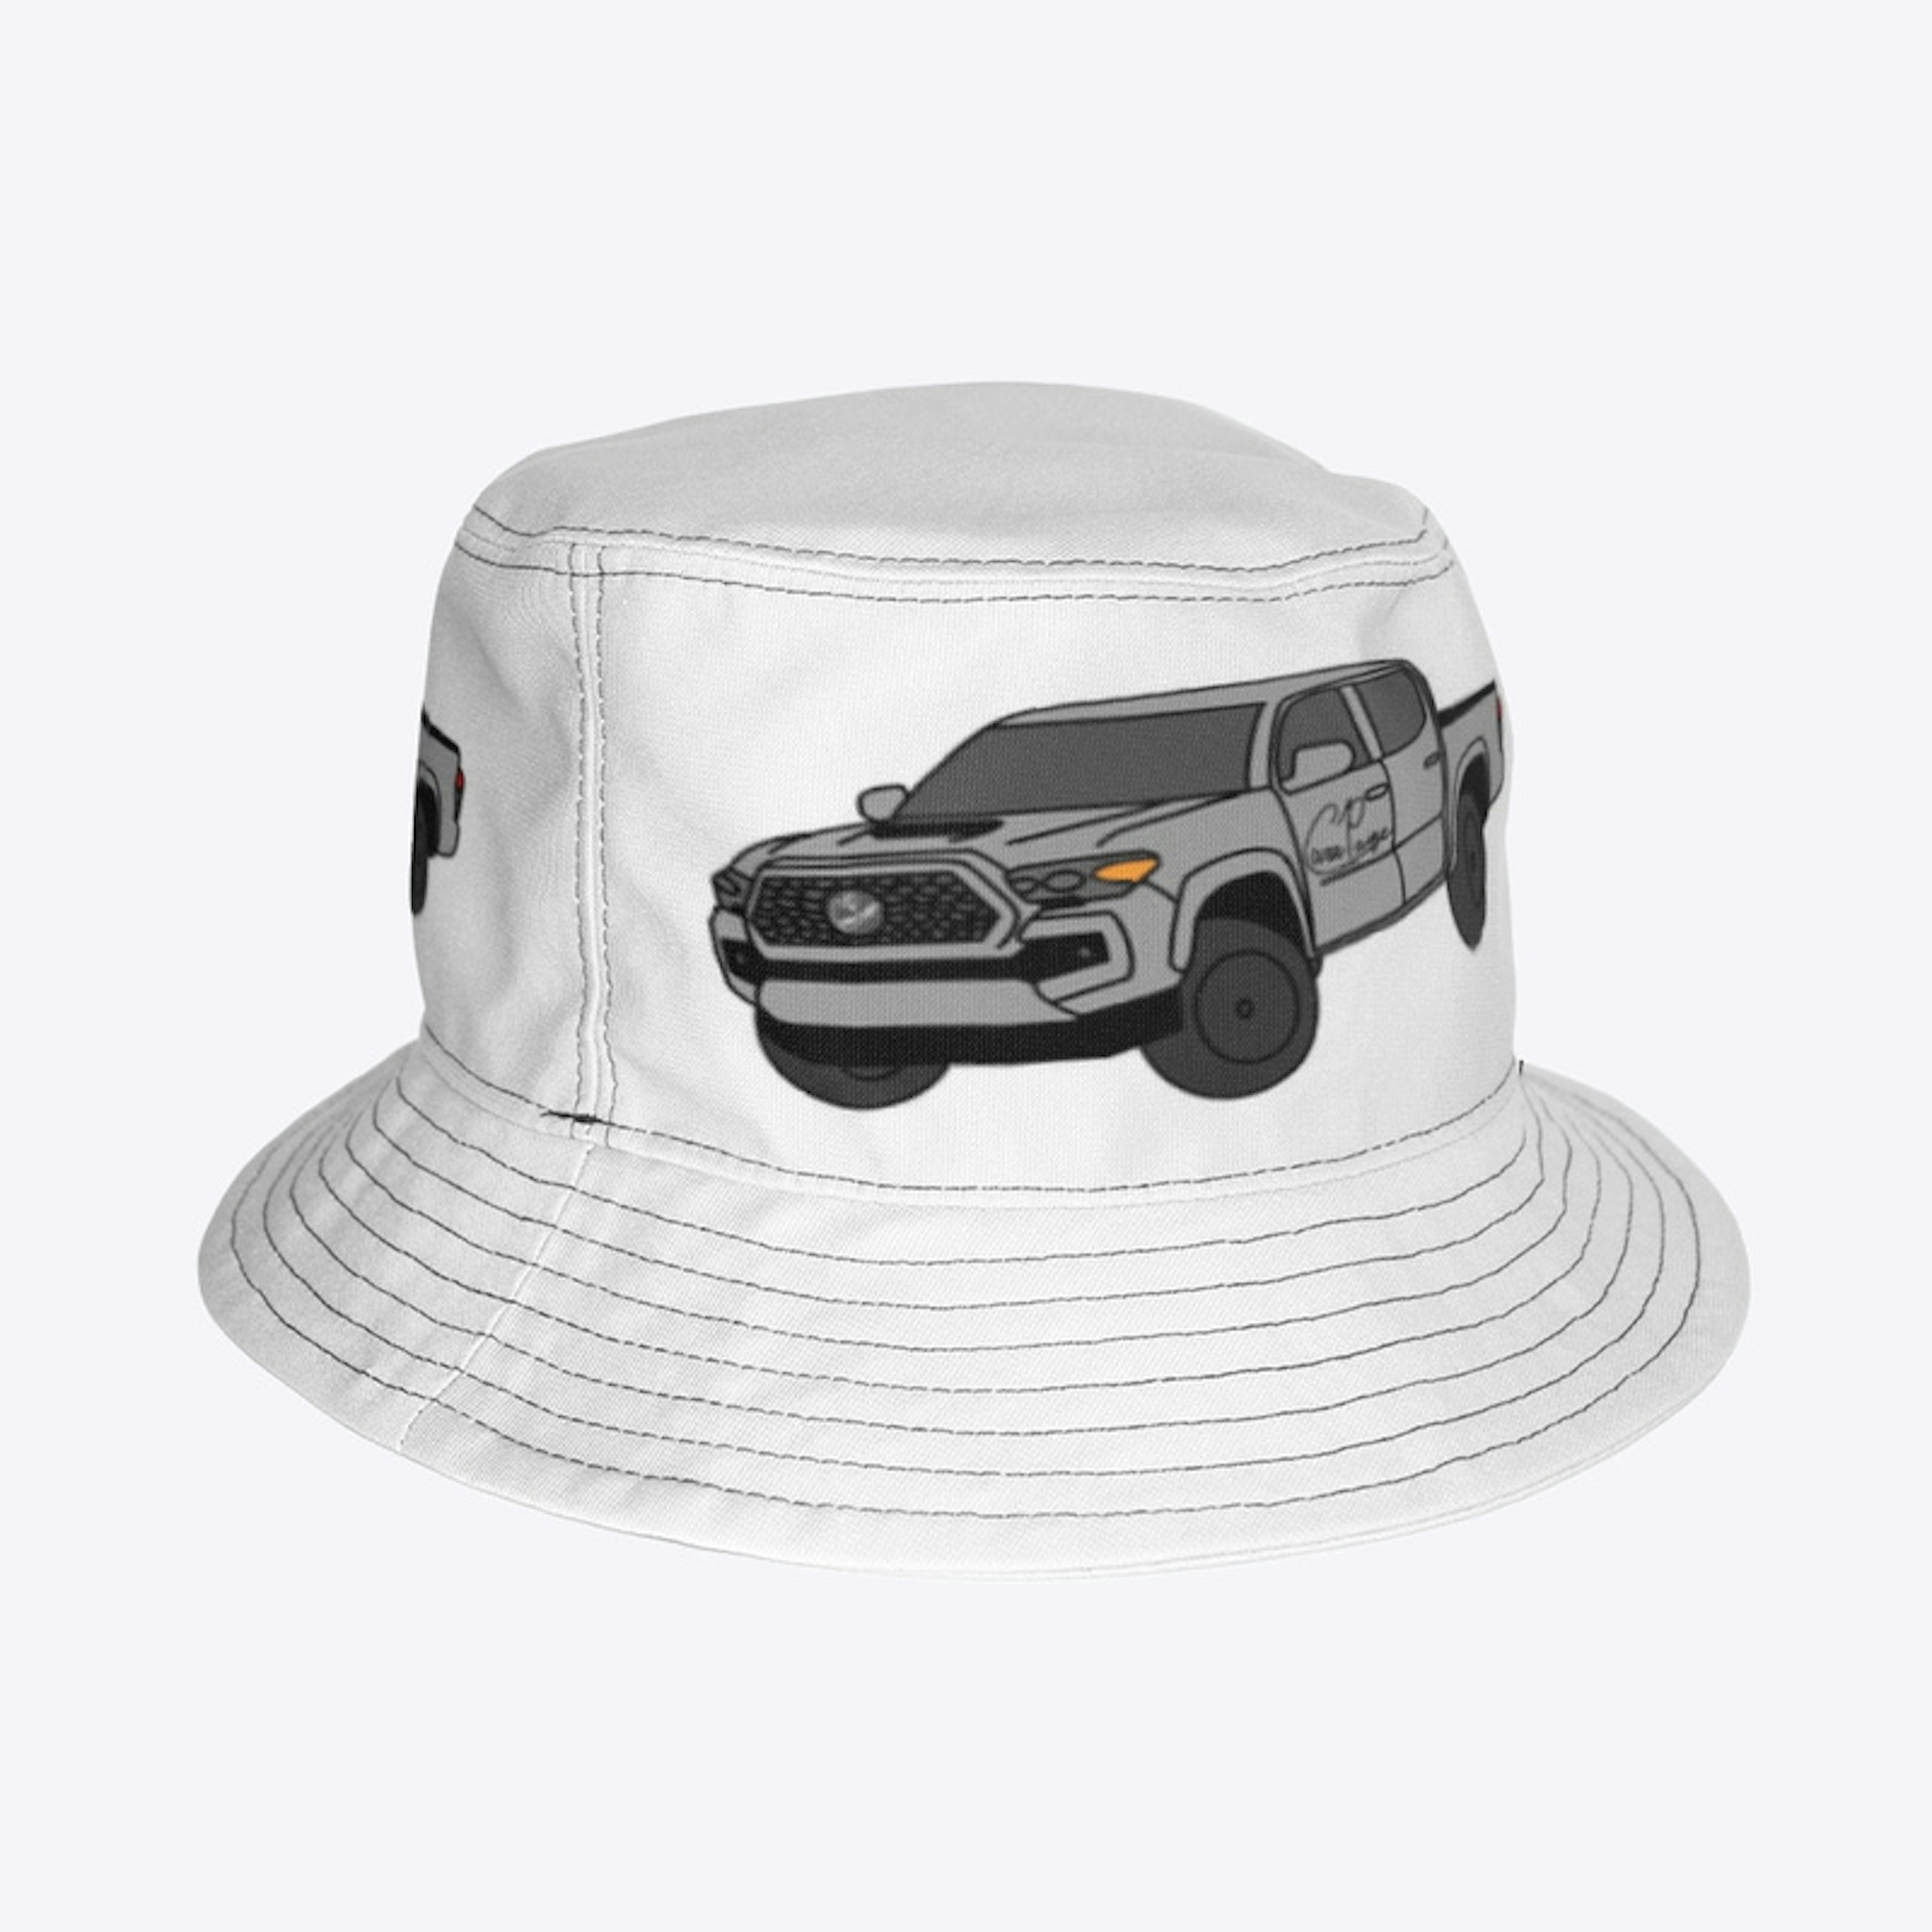 The Truck design bucket hat